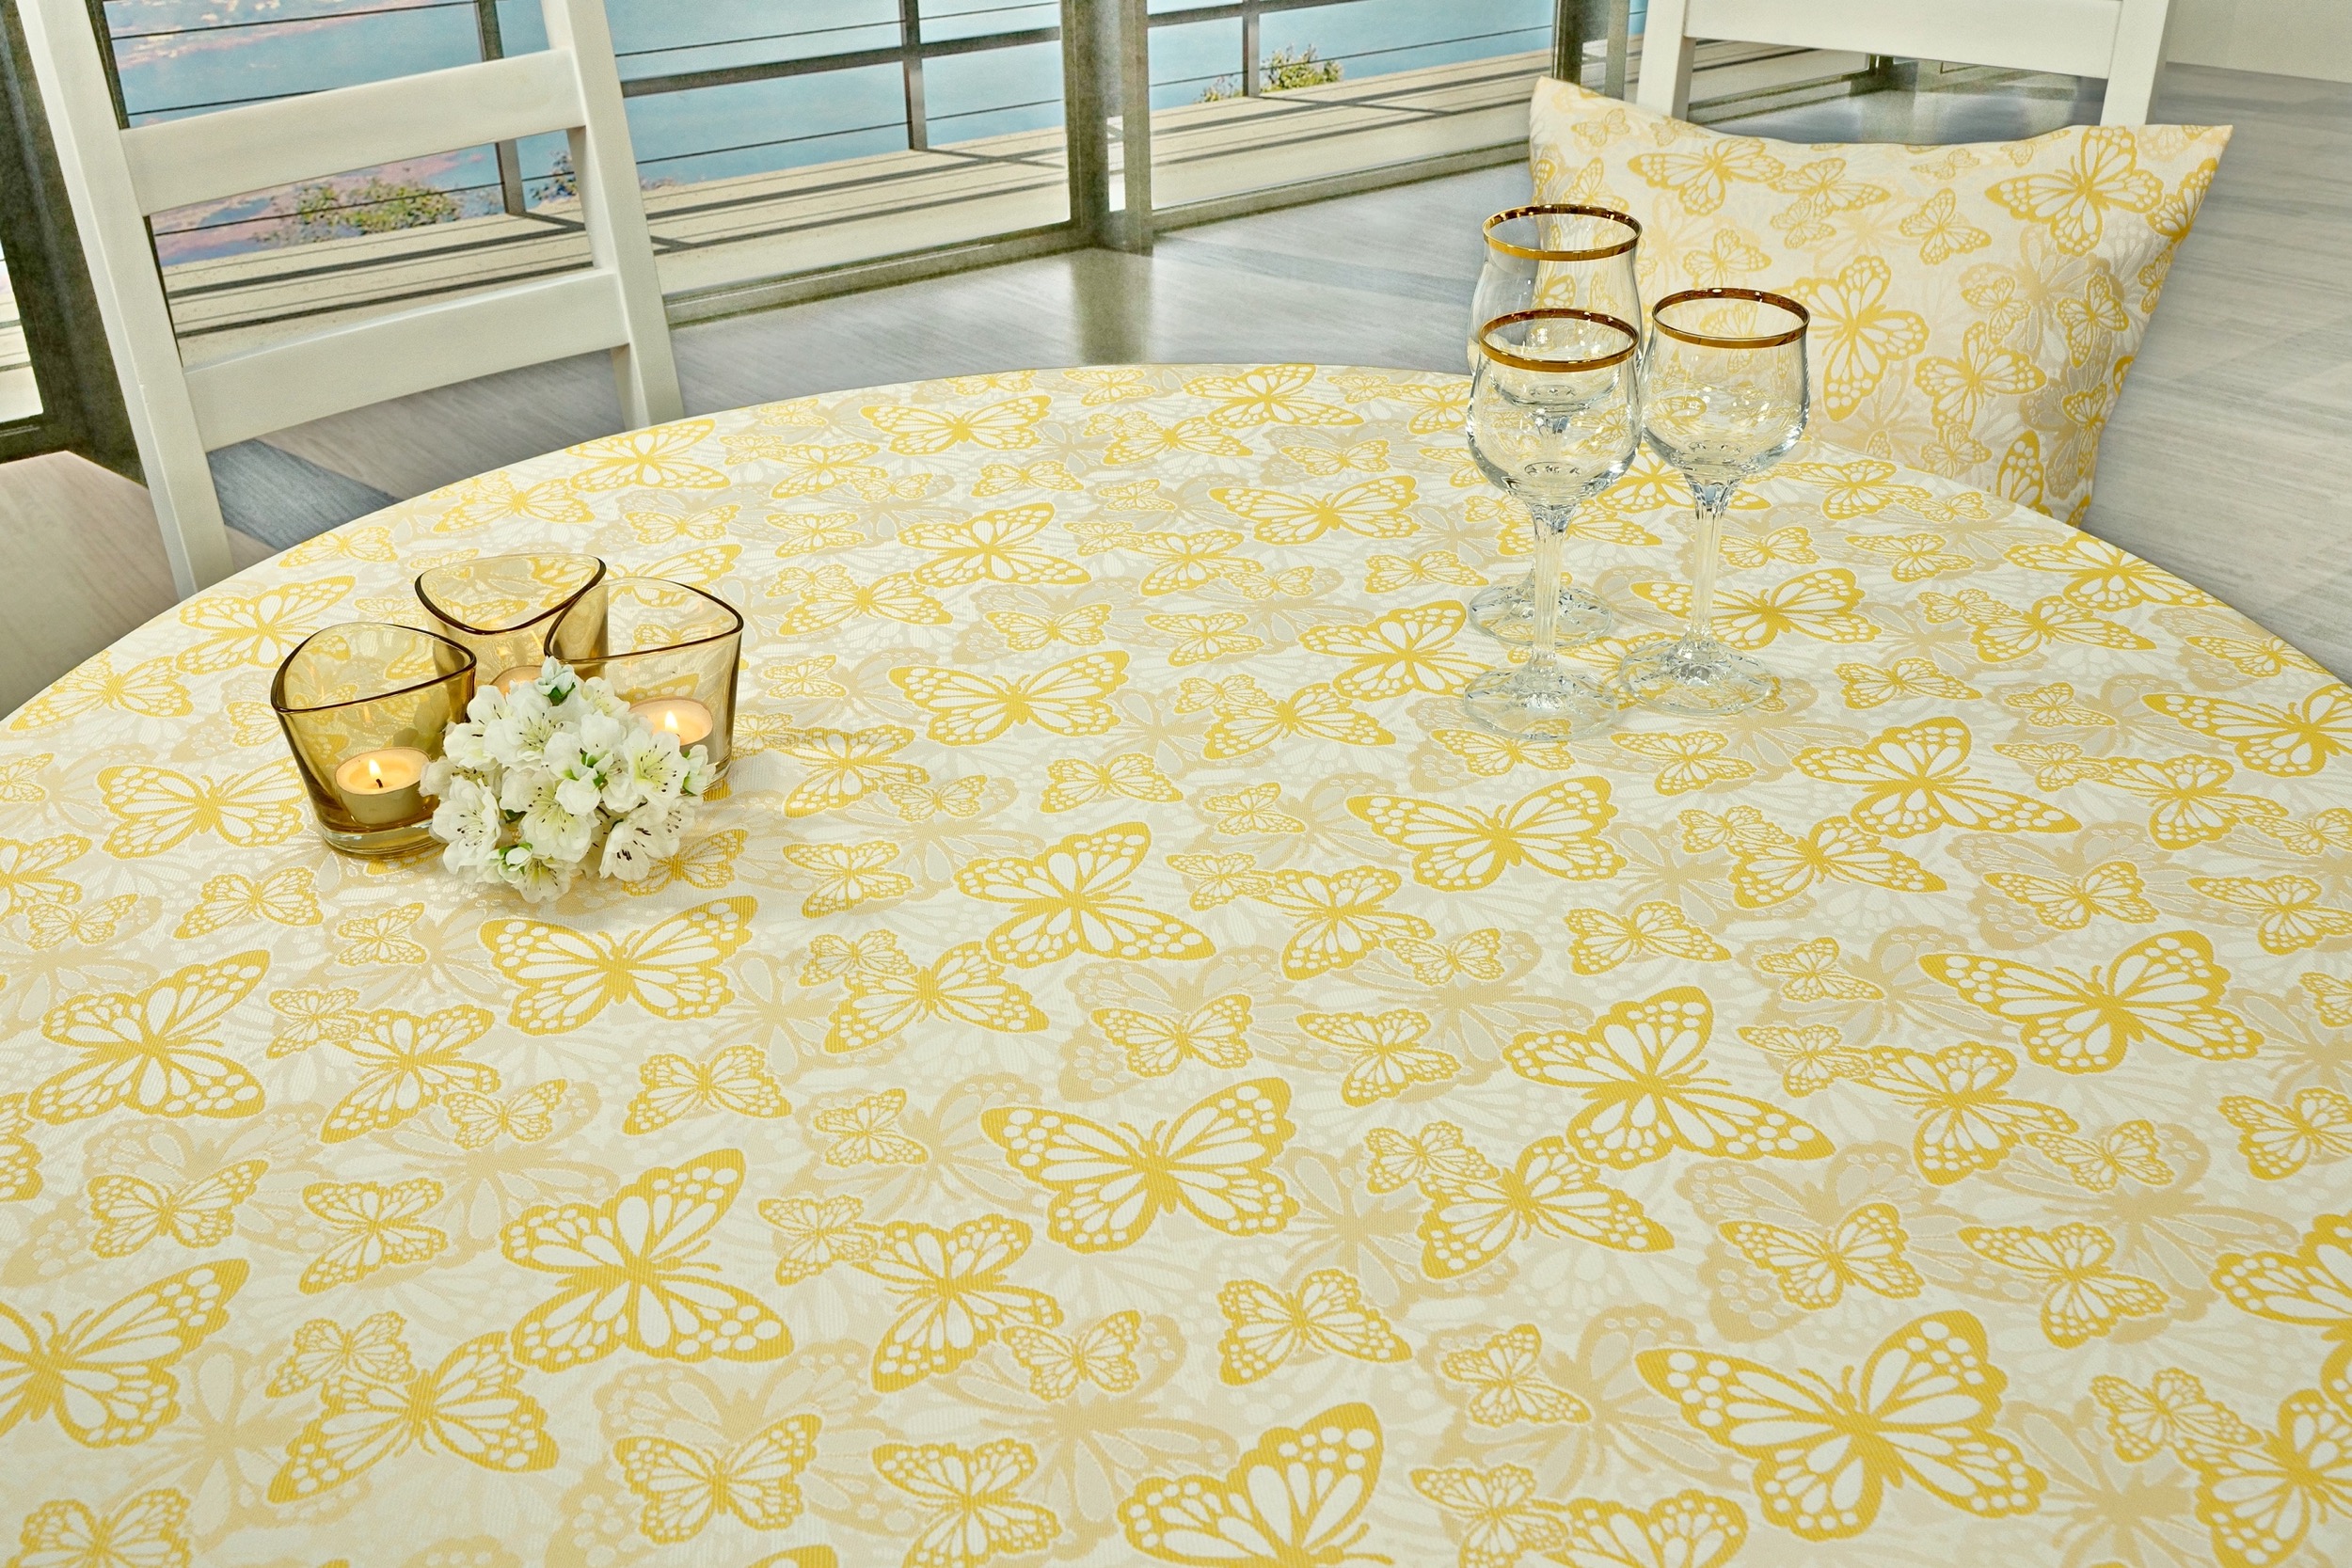 Fleckgeschützte Tischdecke Weiß Gelb Muster Springtime Breite 120 cm OVAL